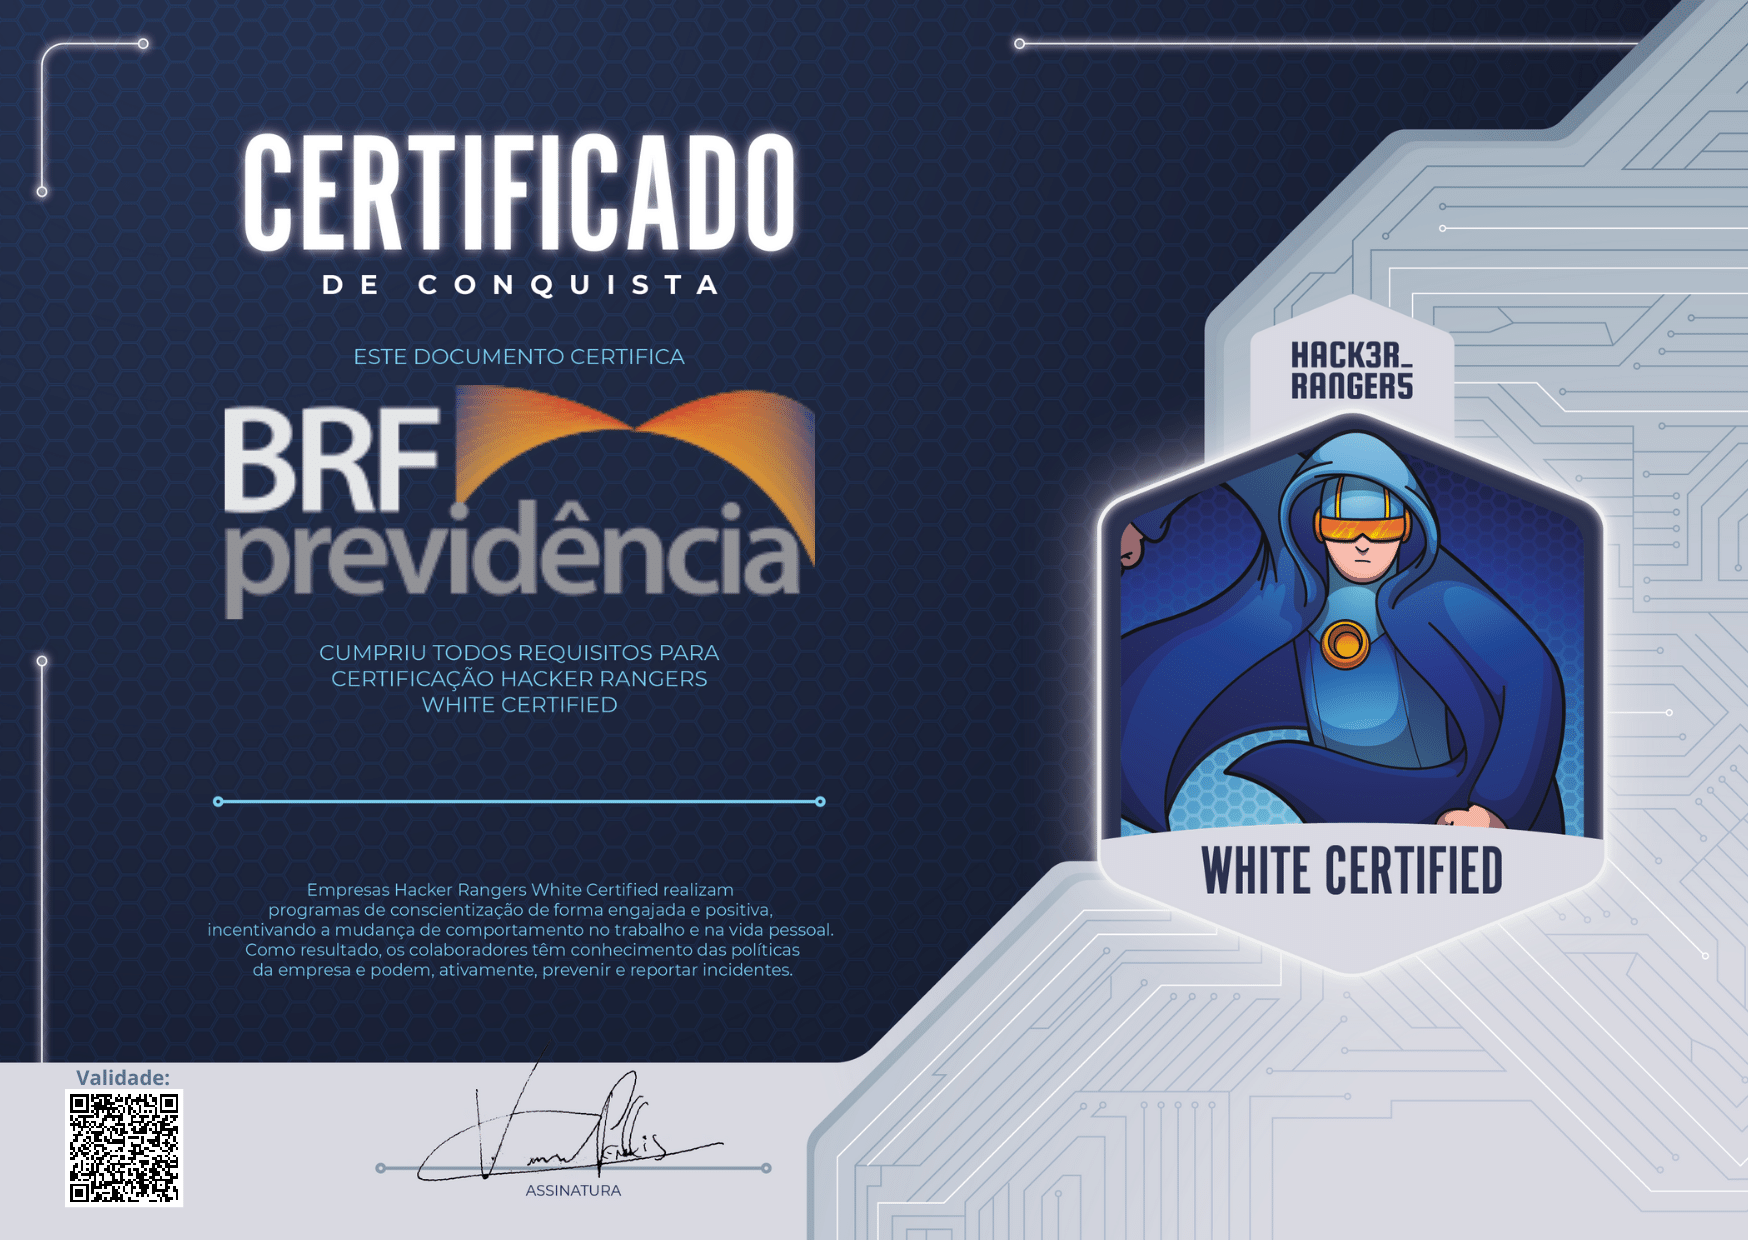 BRF Previdência - Hacker Rangers White Certified